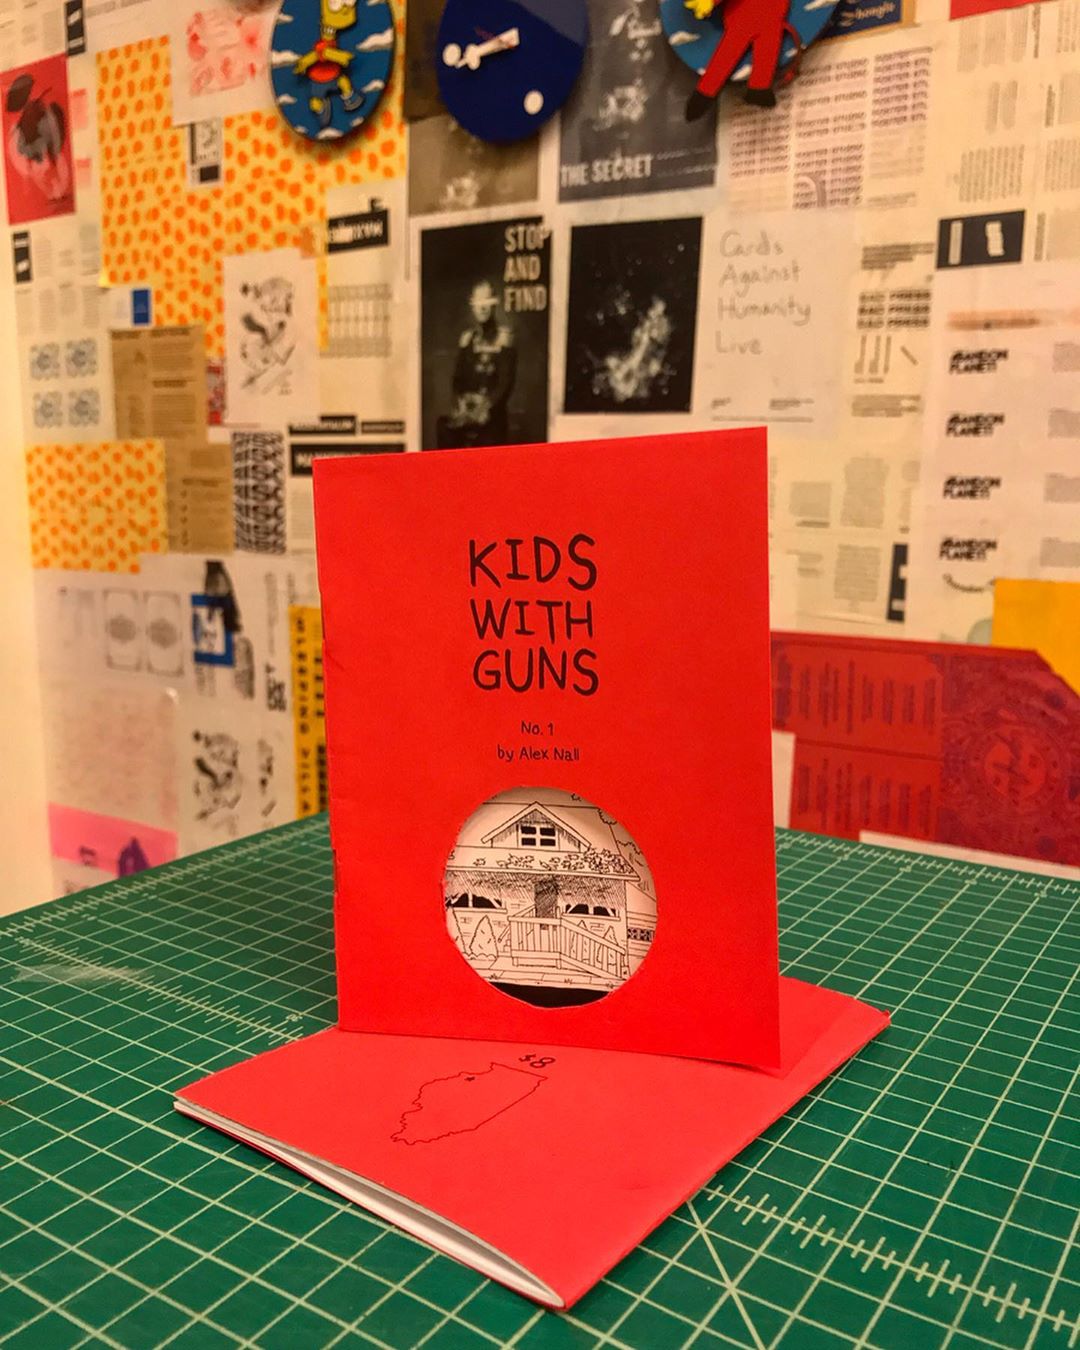 "kids with guns v.1" by alex nall